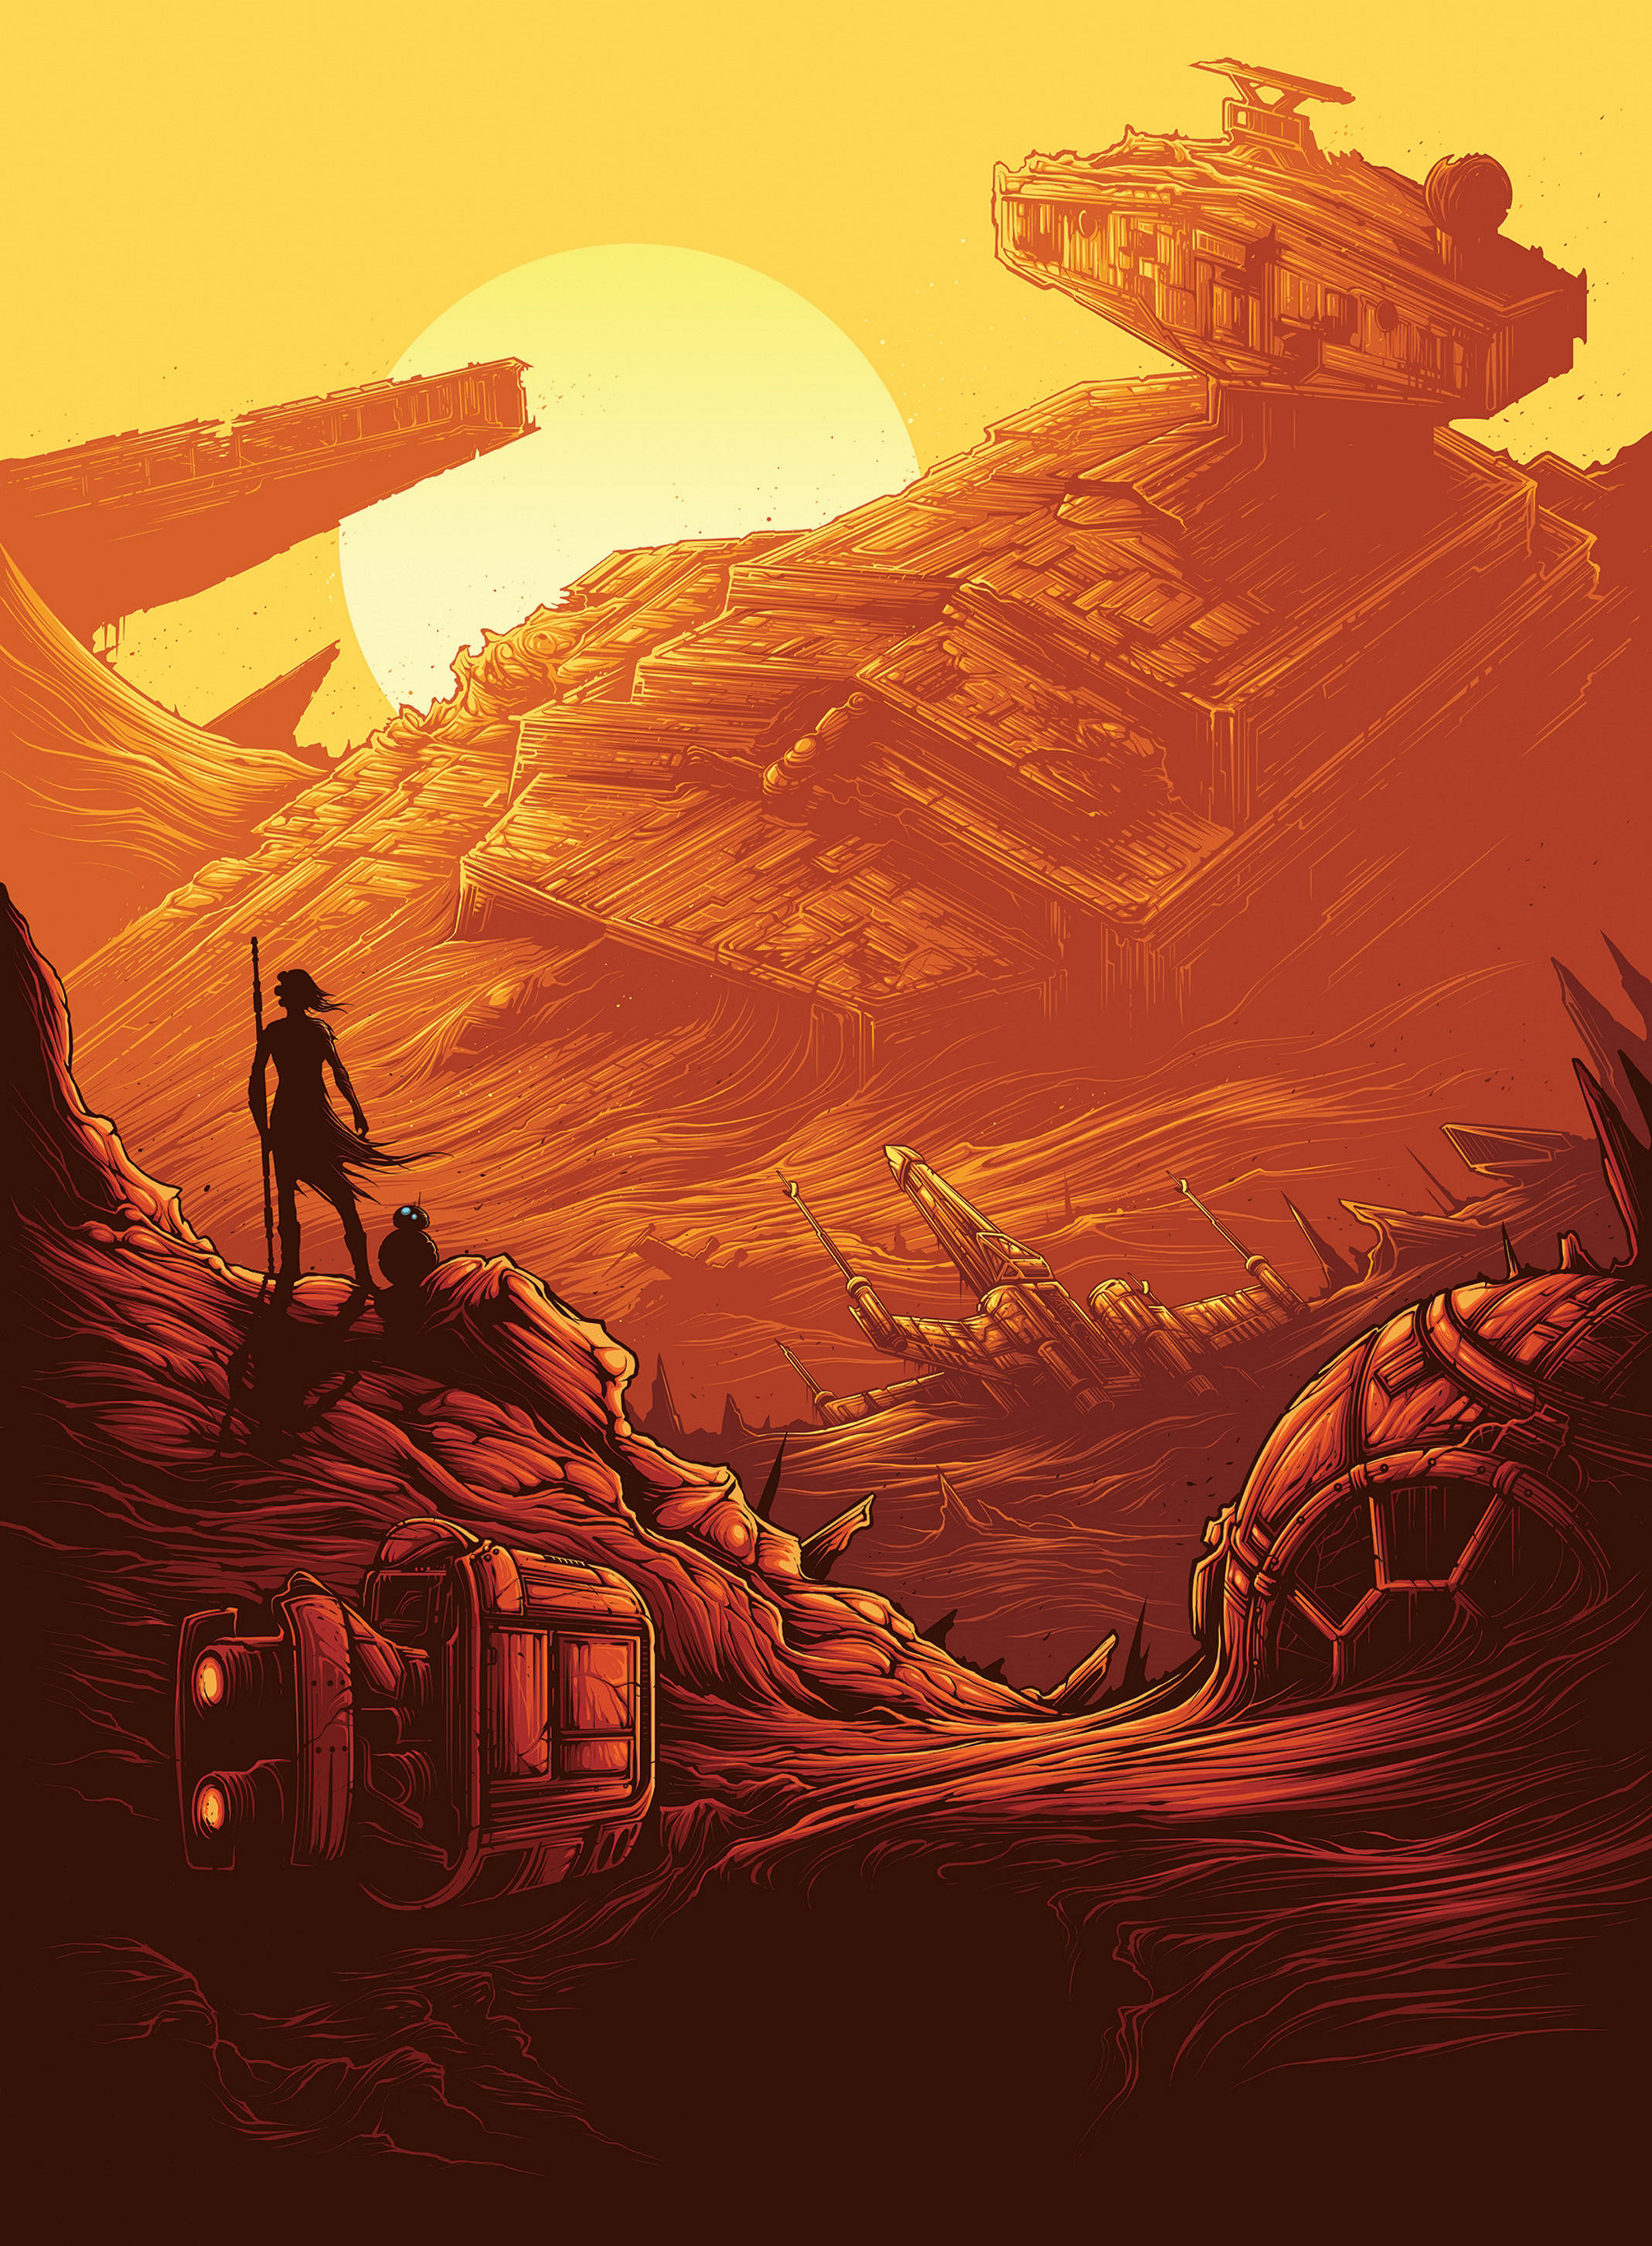 Star Wars Poster Dan Mumford - HD Wallpaper 